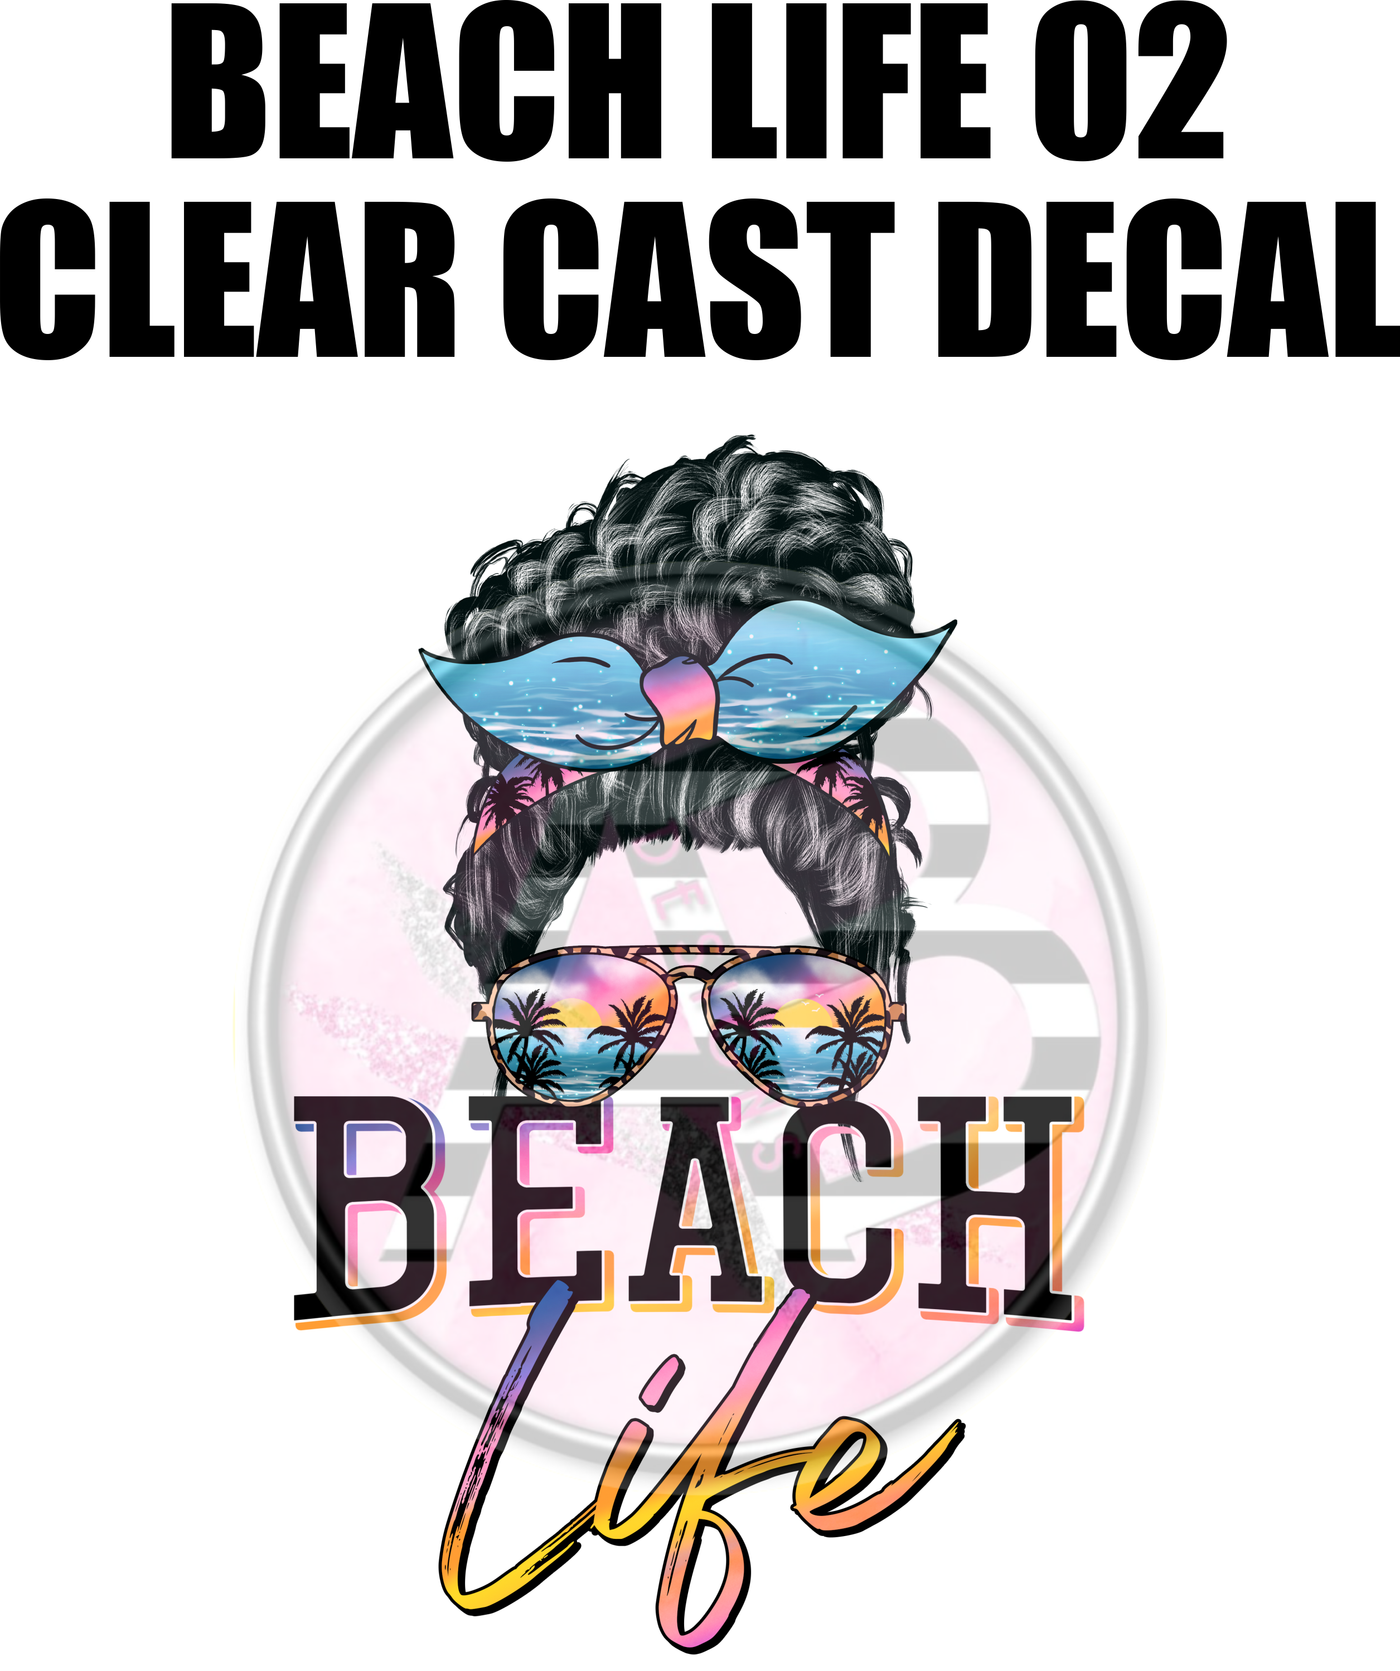 Beach Life 02 - Clear Cast Decal